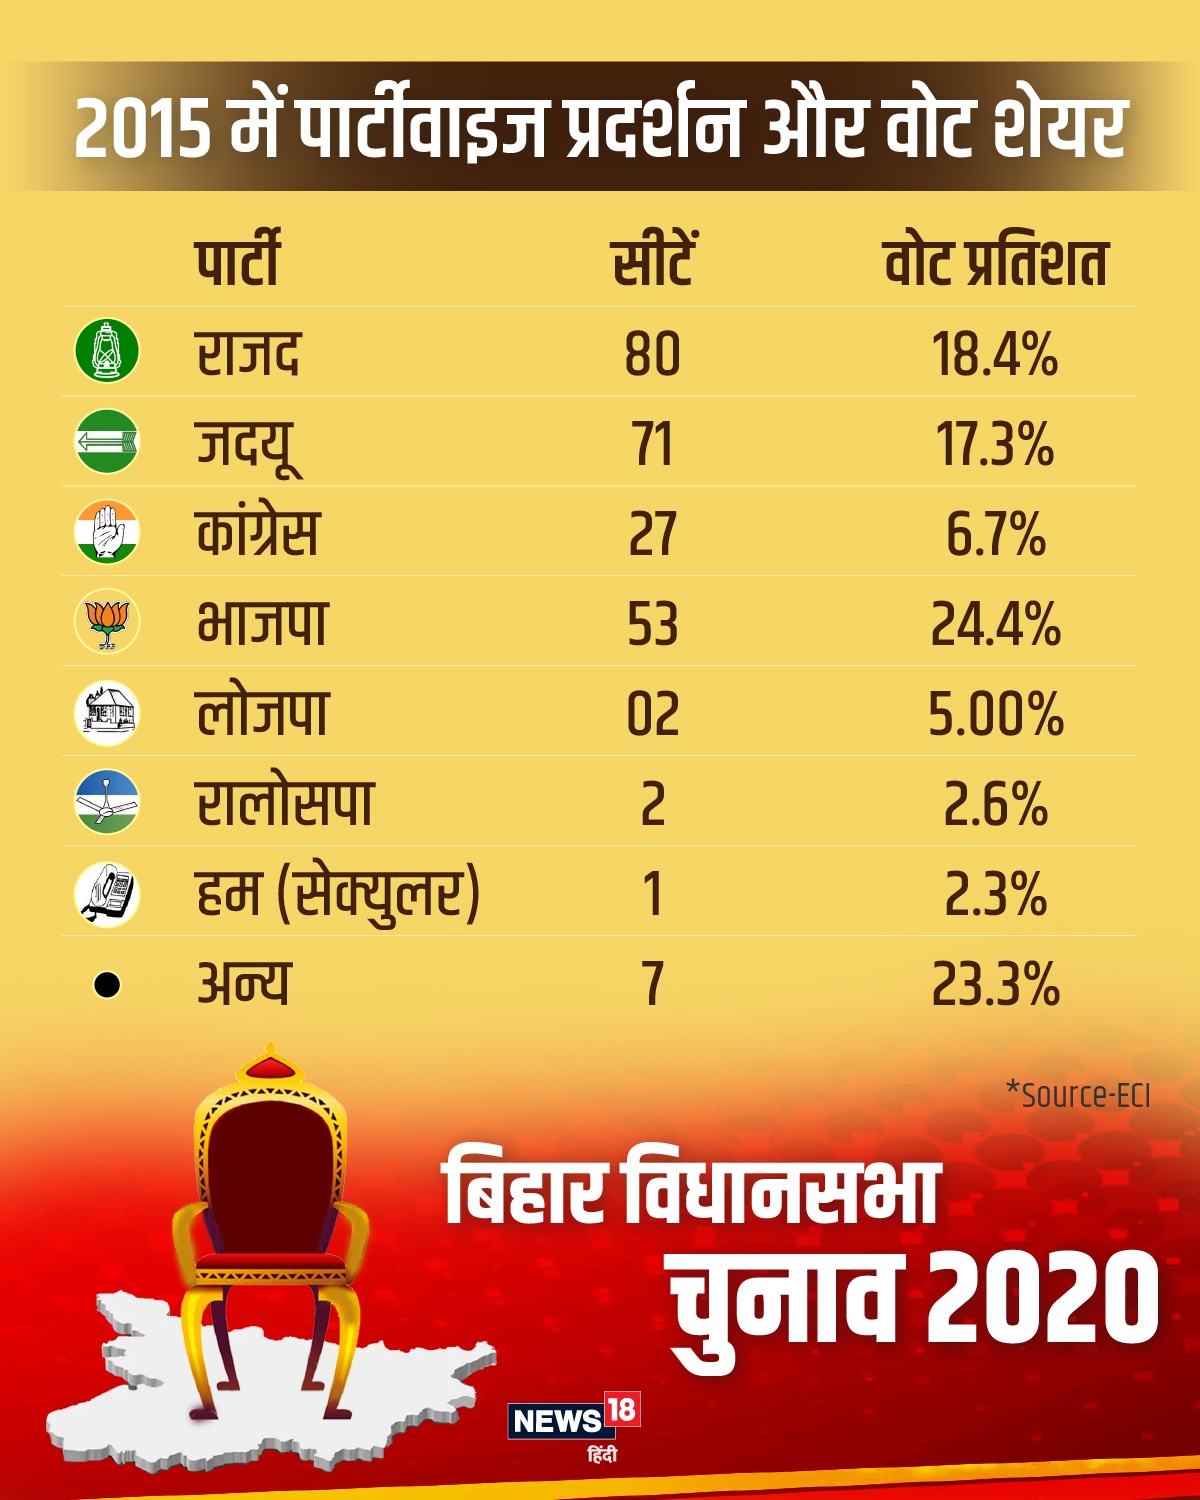 बिहार विधानसभा चुनाव 2020